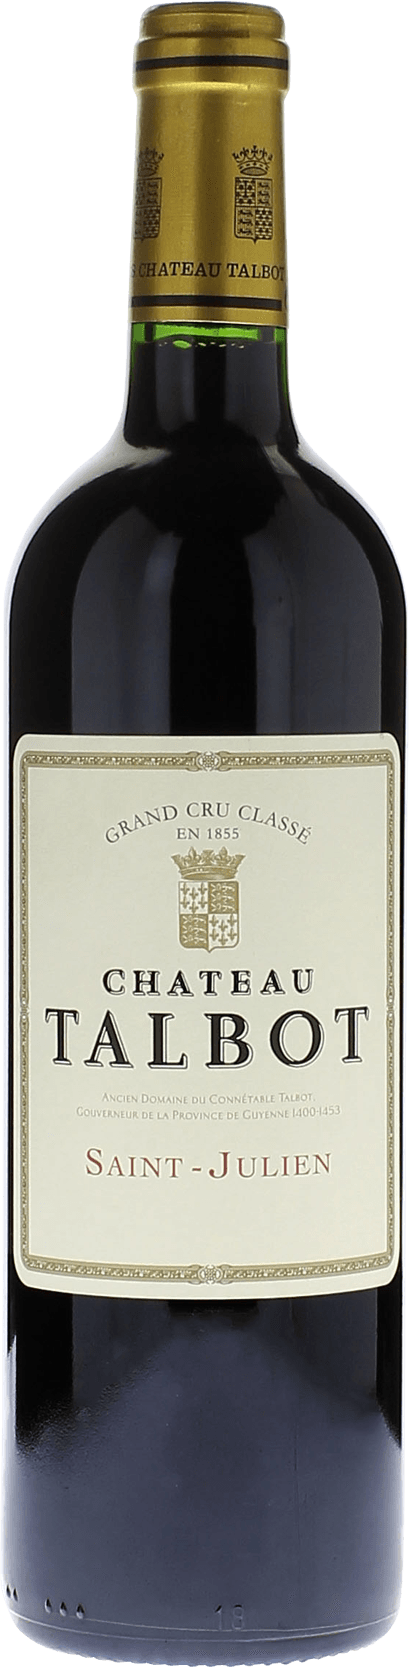 Talbot 2009 4me Grand cru class Saint-Julien, Bordeaux rouge